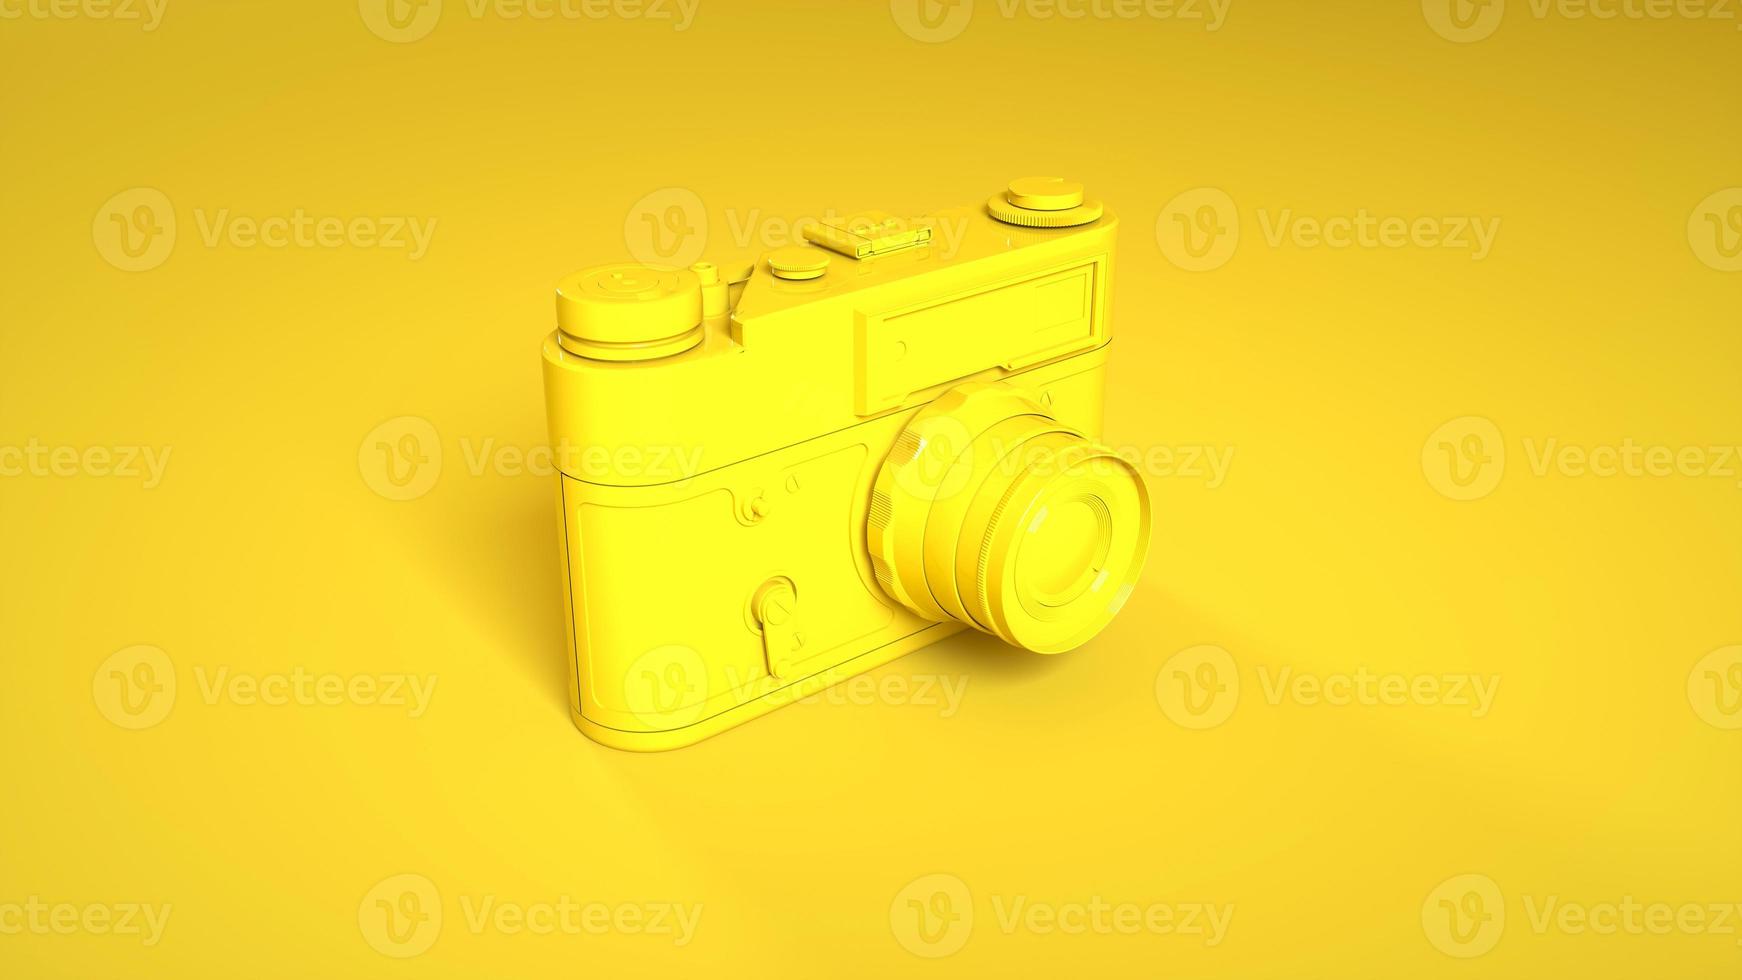 appareil photo vintage isolé sur fond jaune. rendu 3d